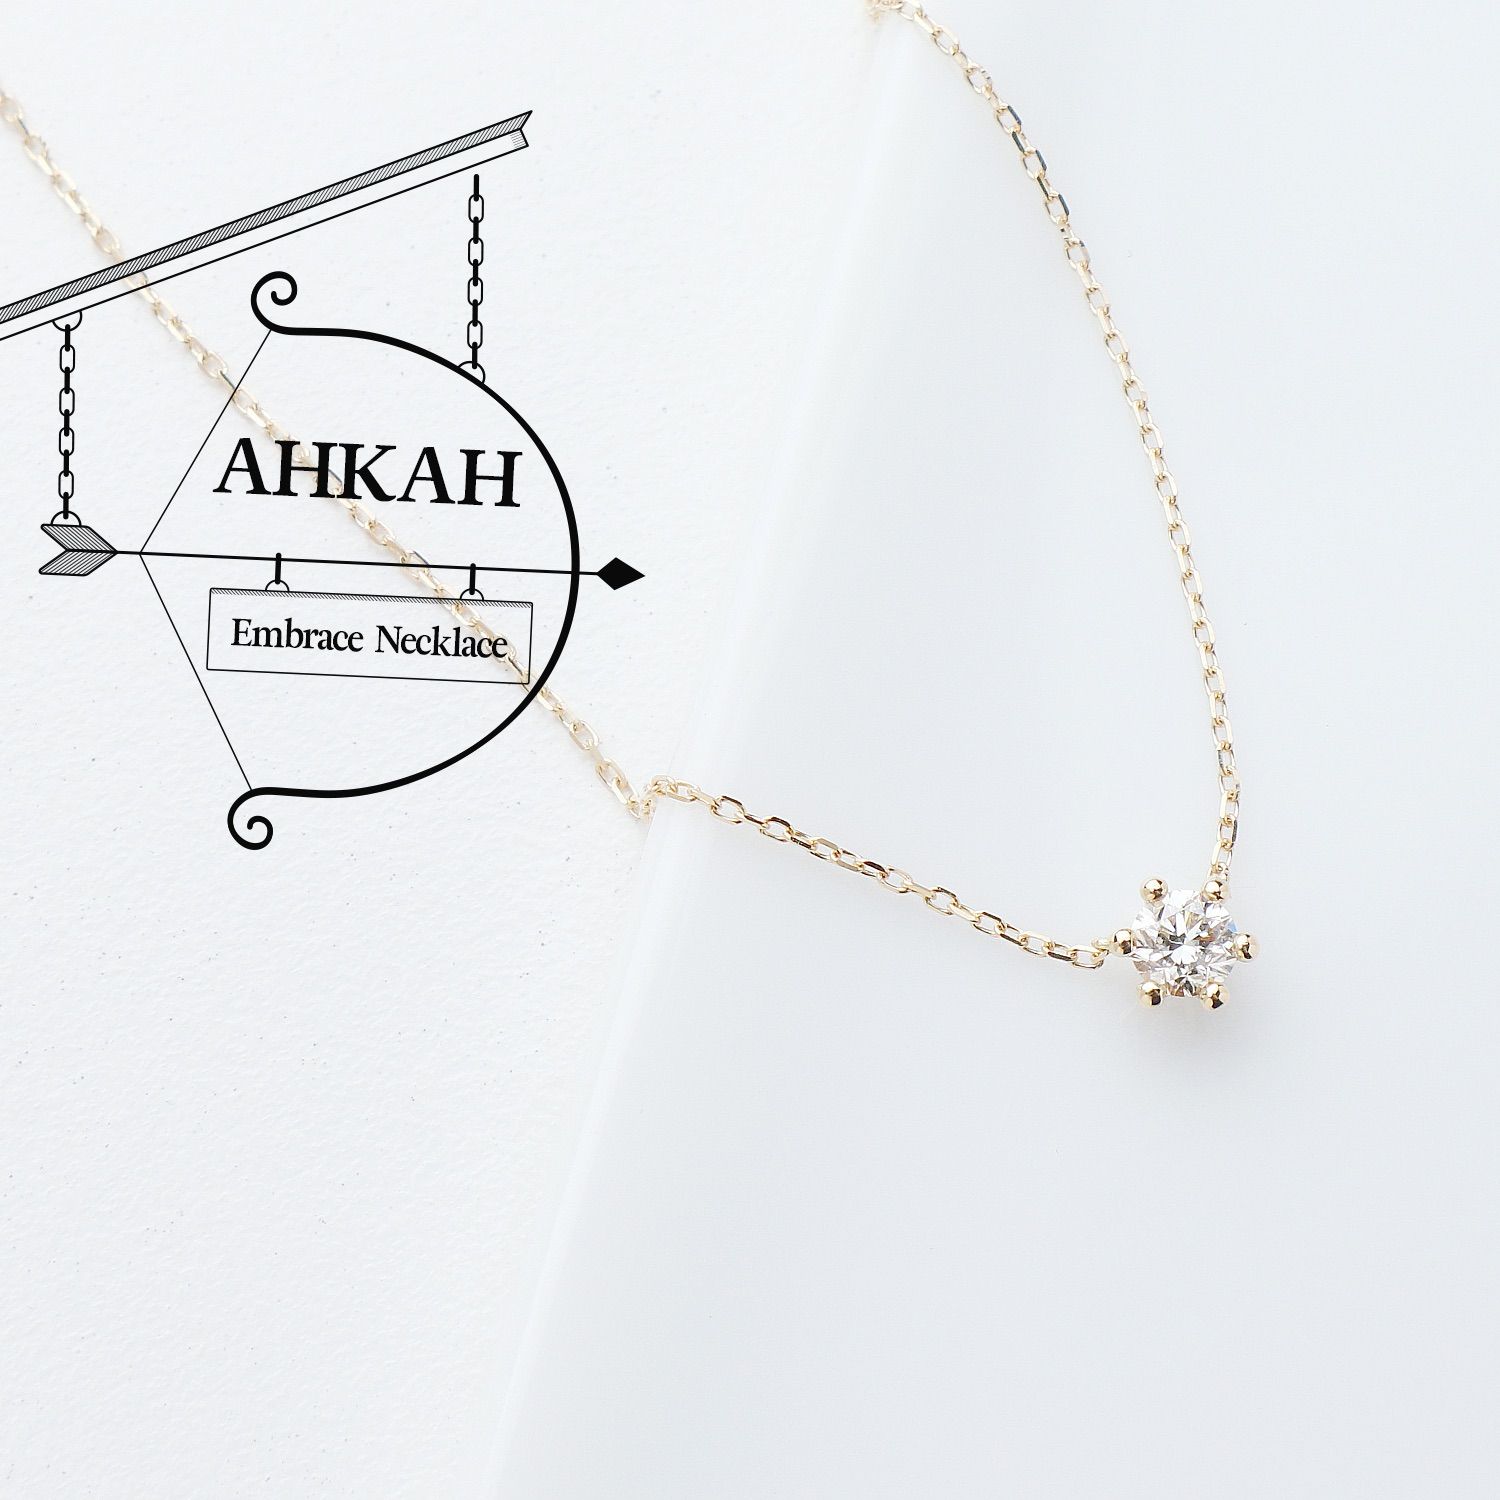 再追加販売 【超美品】AHKAH(アーカー) ダイヤモンドK18 ネックレス